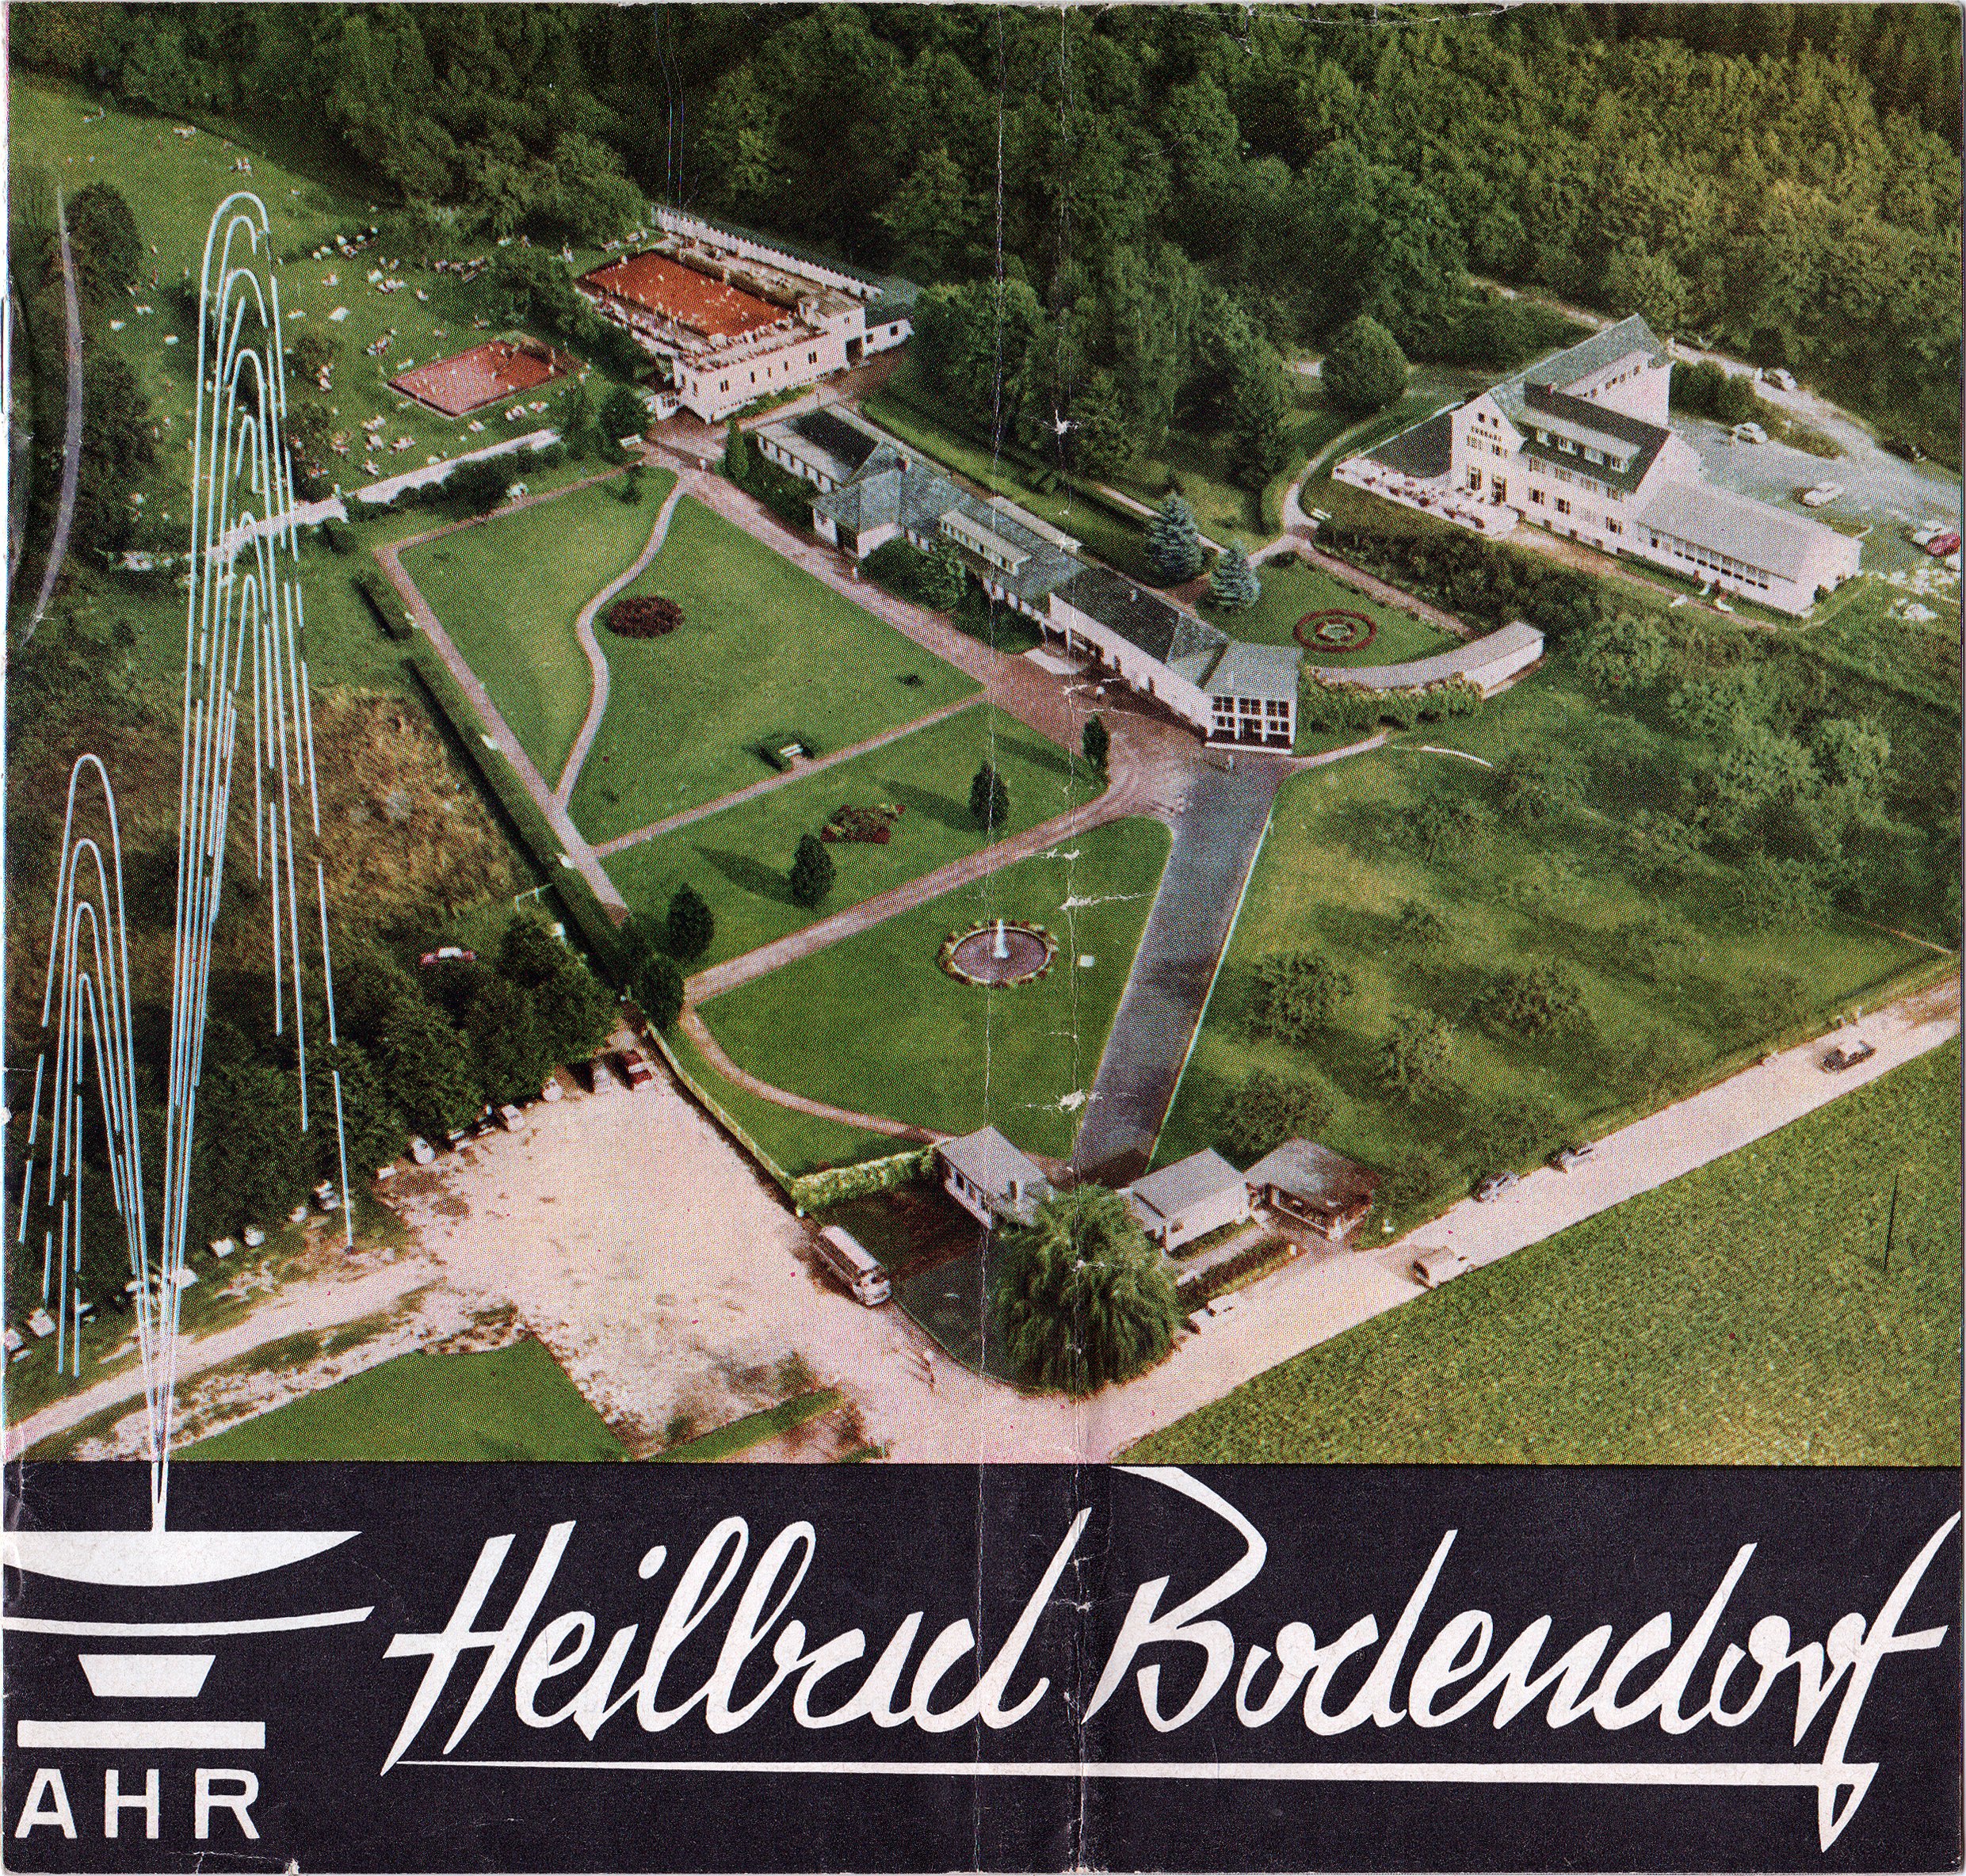 Werbeprospekt des Bodendorfer Sprudel aus den 1960er Jahren (Heimatarchiv Bad Bodendorf CC BY-NC-SA)